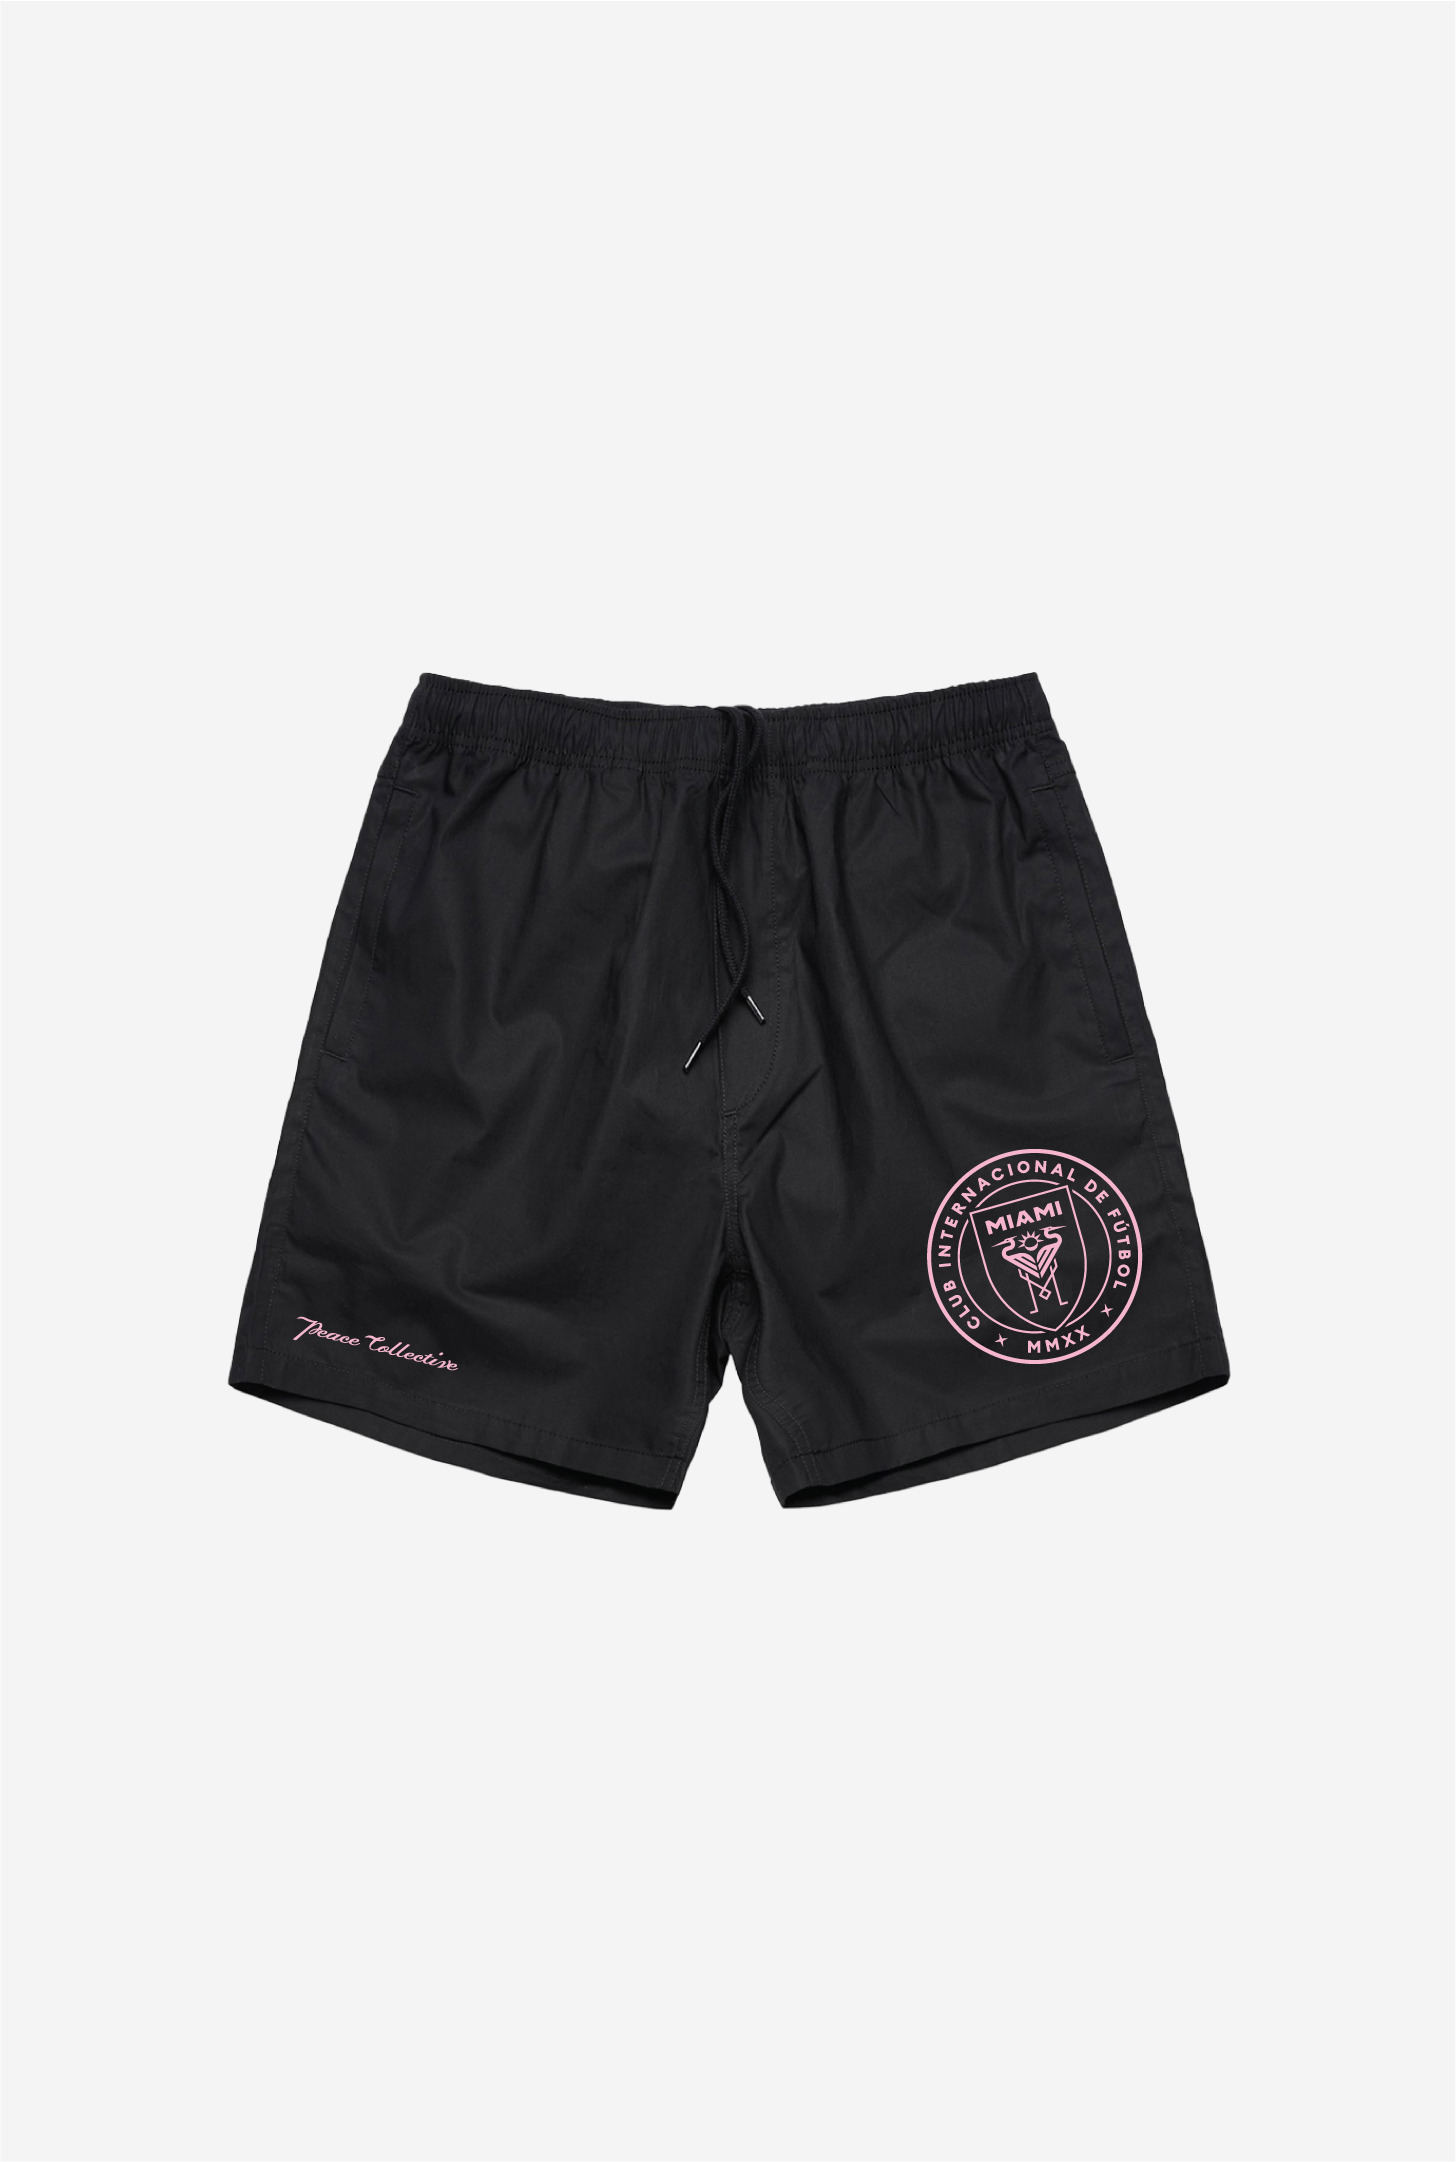 Inter Miami CF Board Shorts - Black